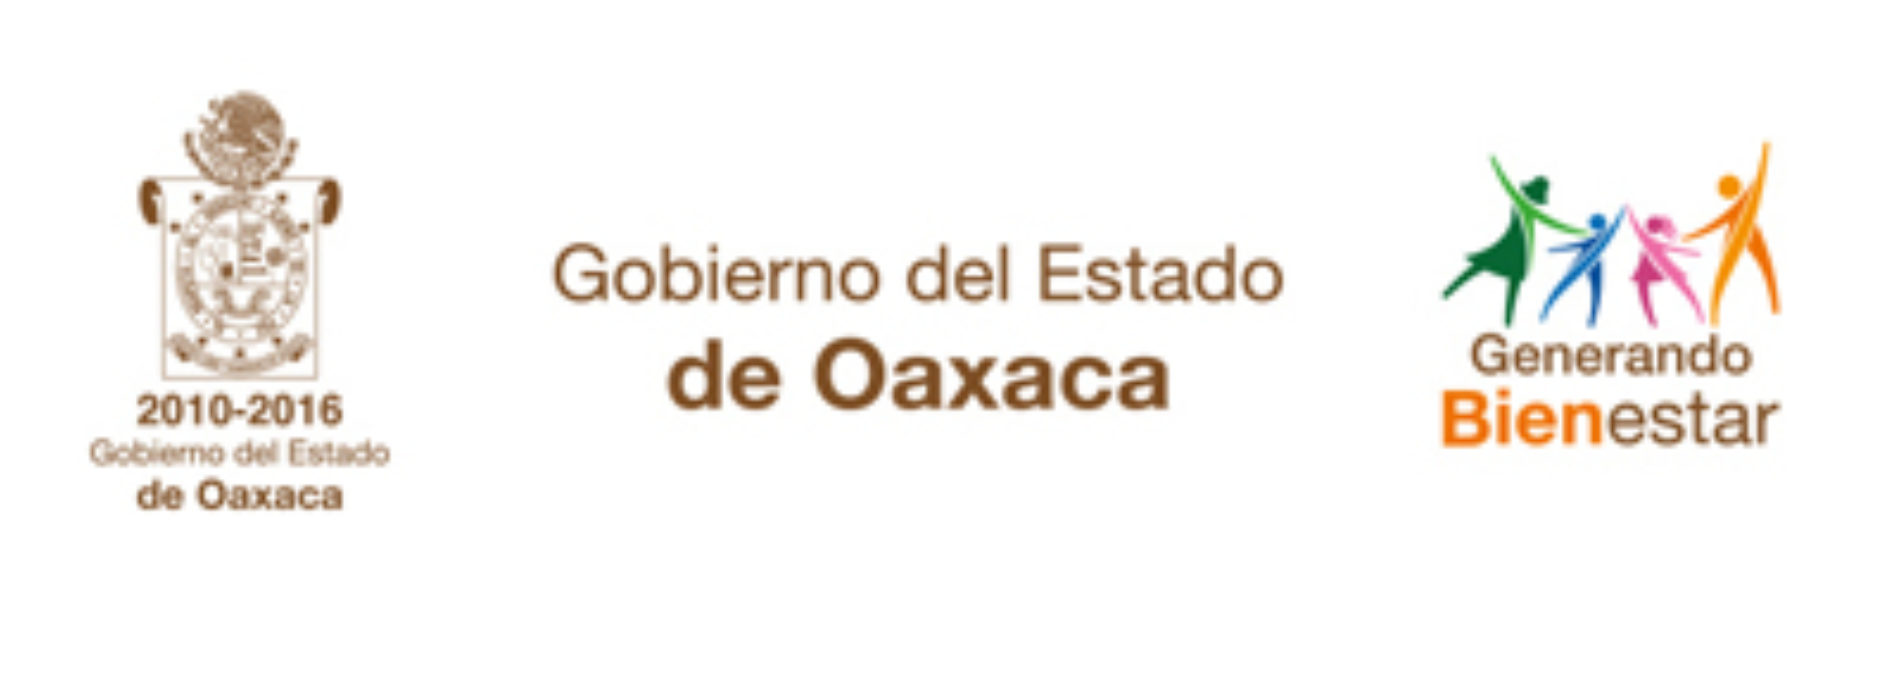 Sin fundamento versión de redes sociales sobre presunto abuso sexual a maestra en el Estado de Oaxaca